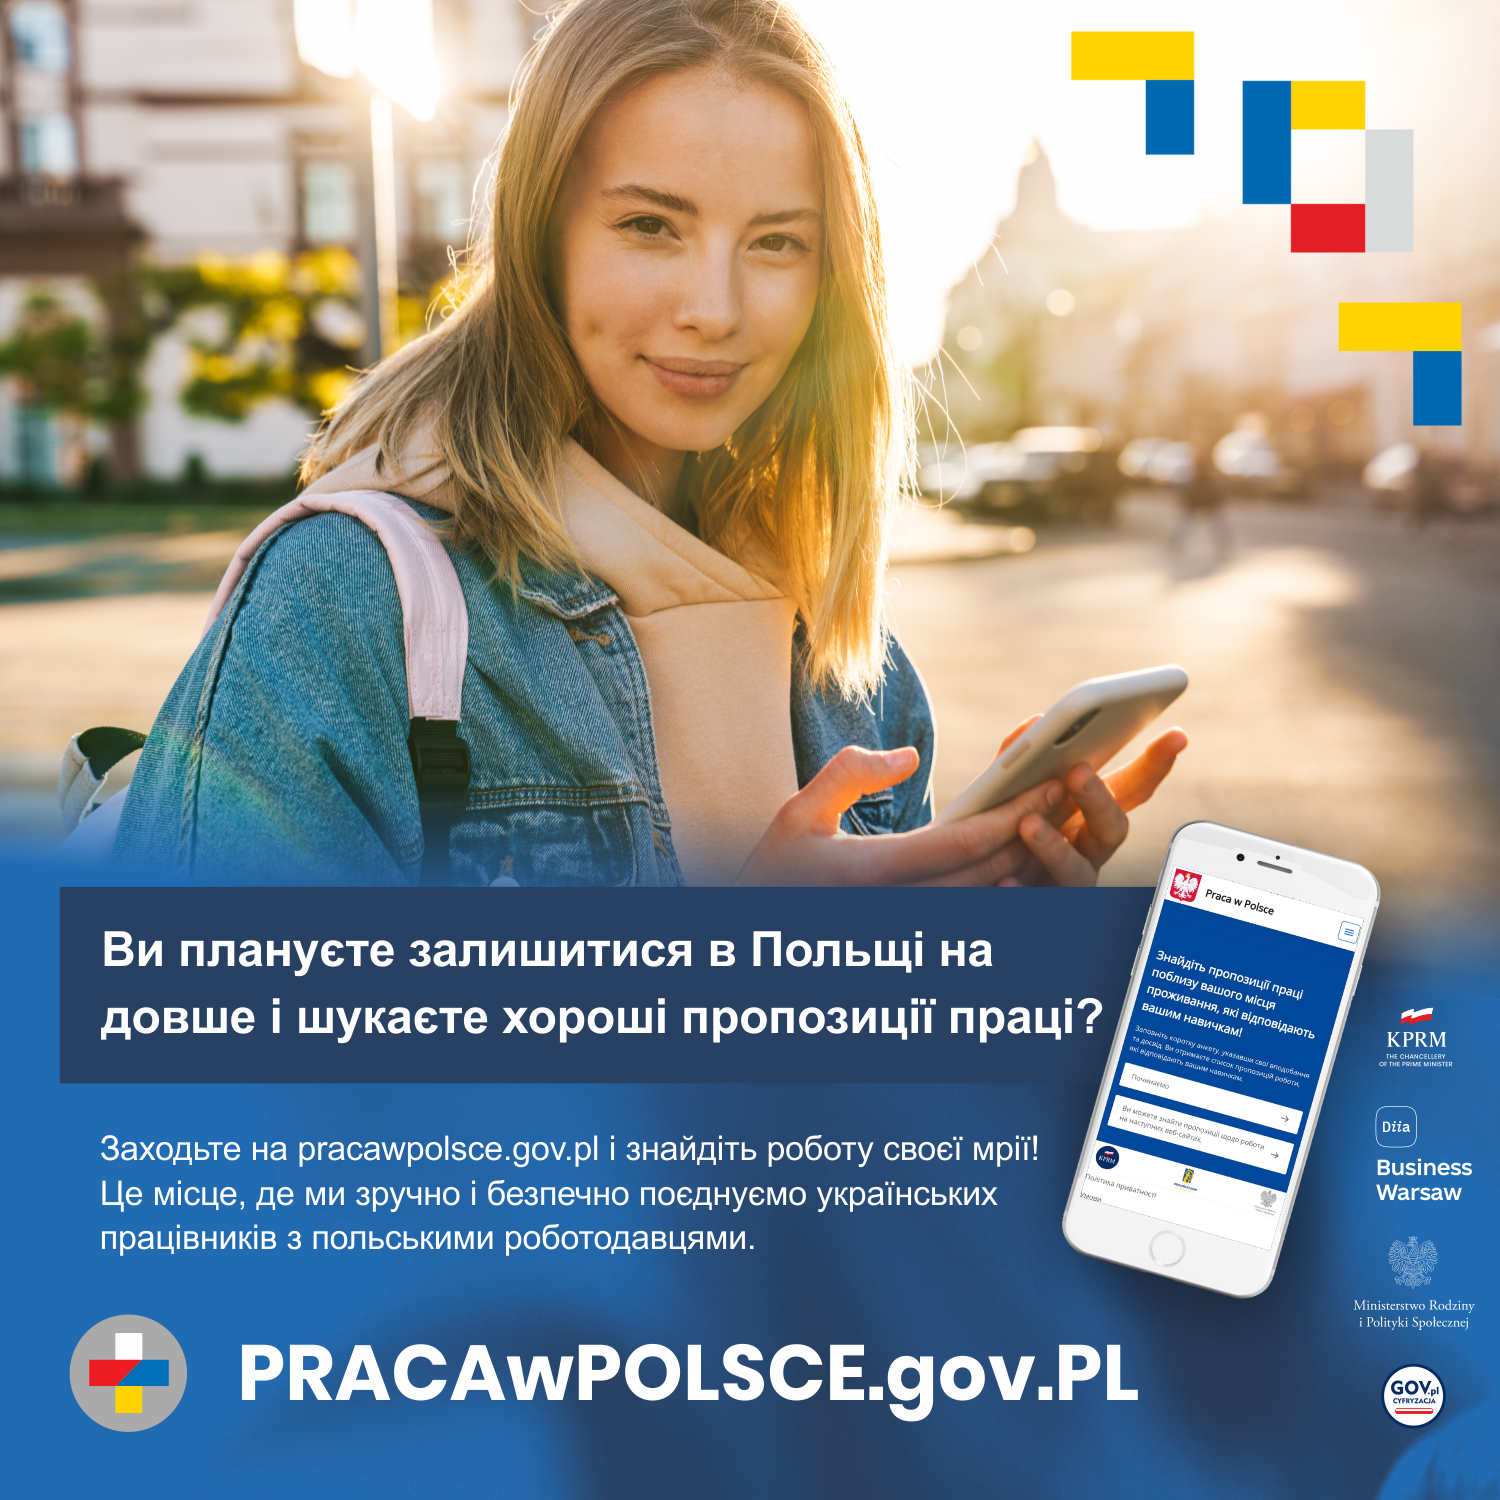 Grafika promujaca Platformę dla obywateli Ukrainy poszukujących pracy. Przedstawia kobietę. Poniżej tekst w jezyku ukraińskim.